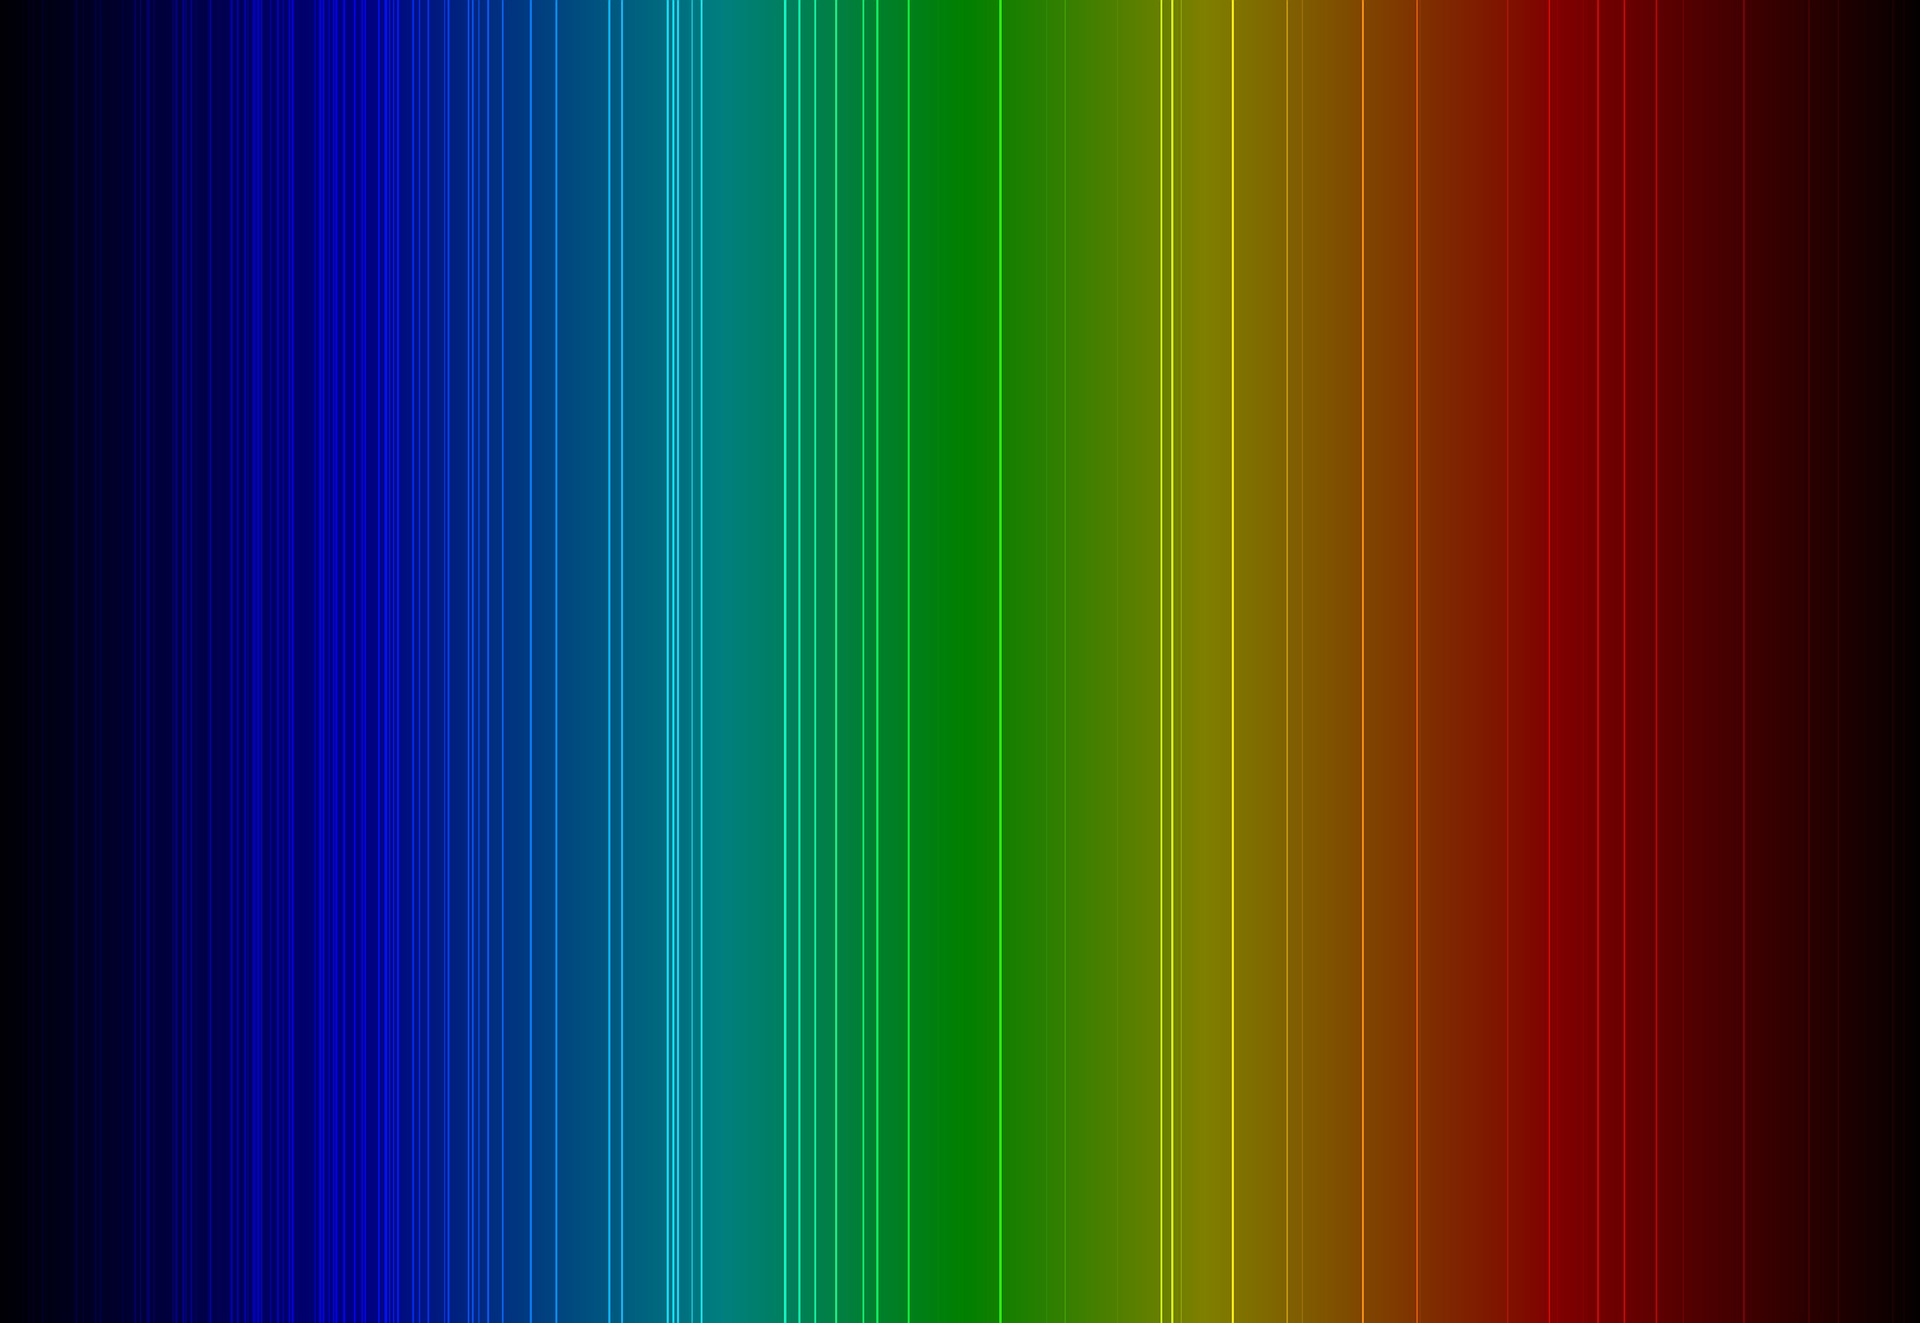 spectrum-937560_1920